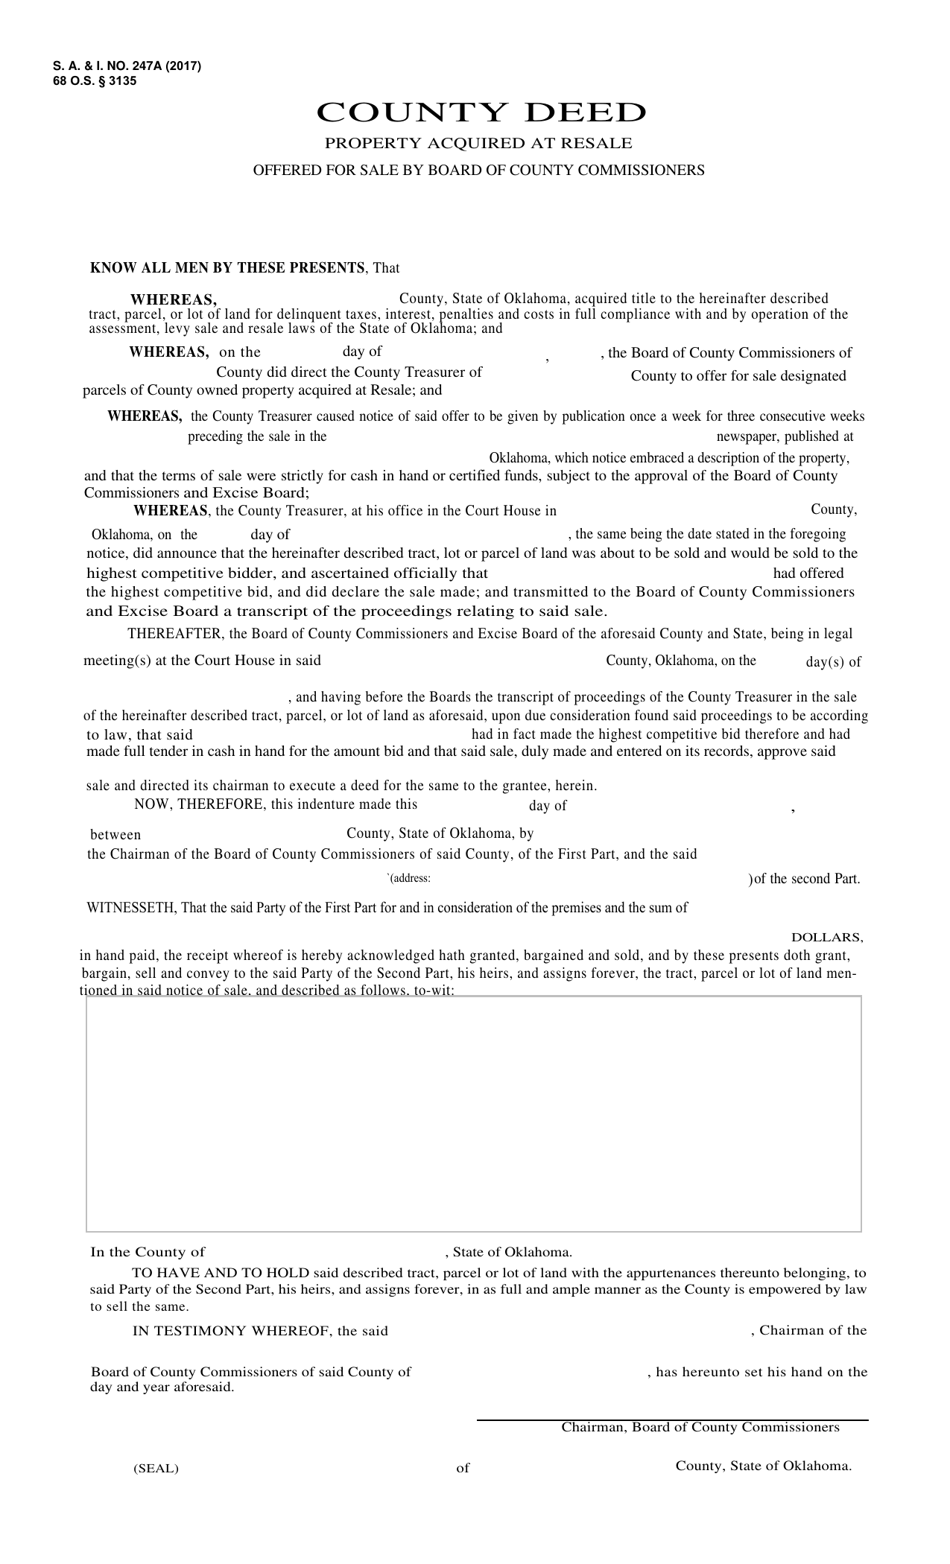 Form S.A. I.247A County Deed - Oklahoma, Page 1